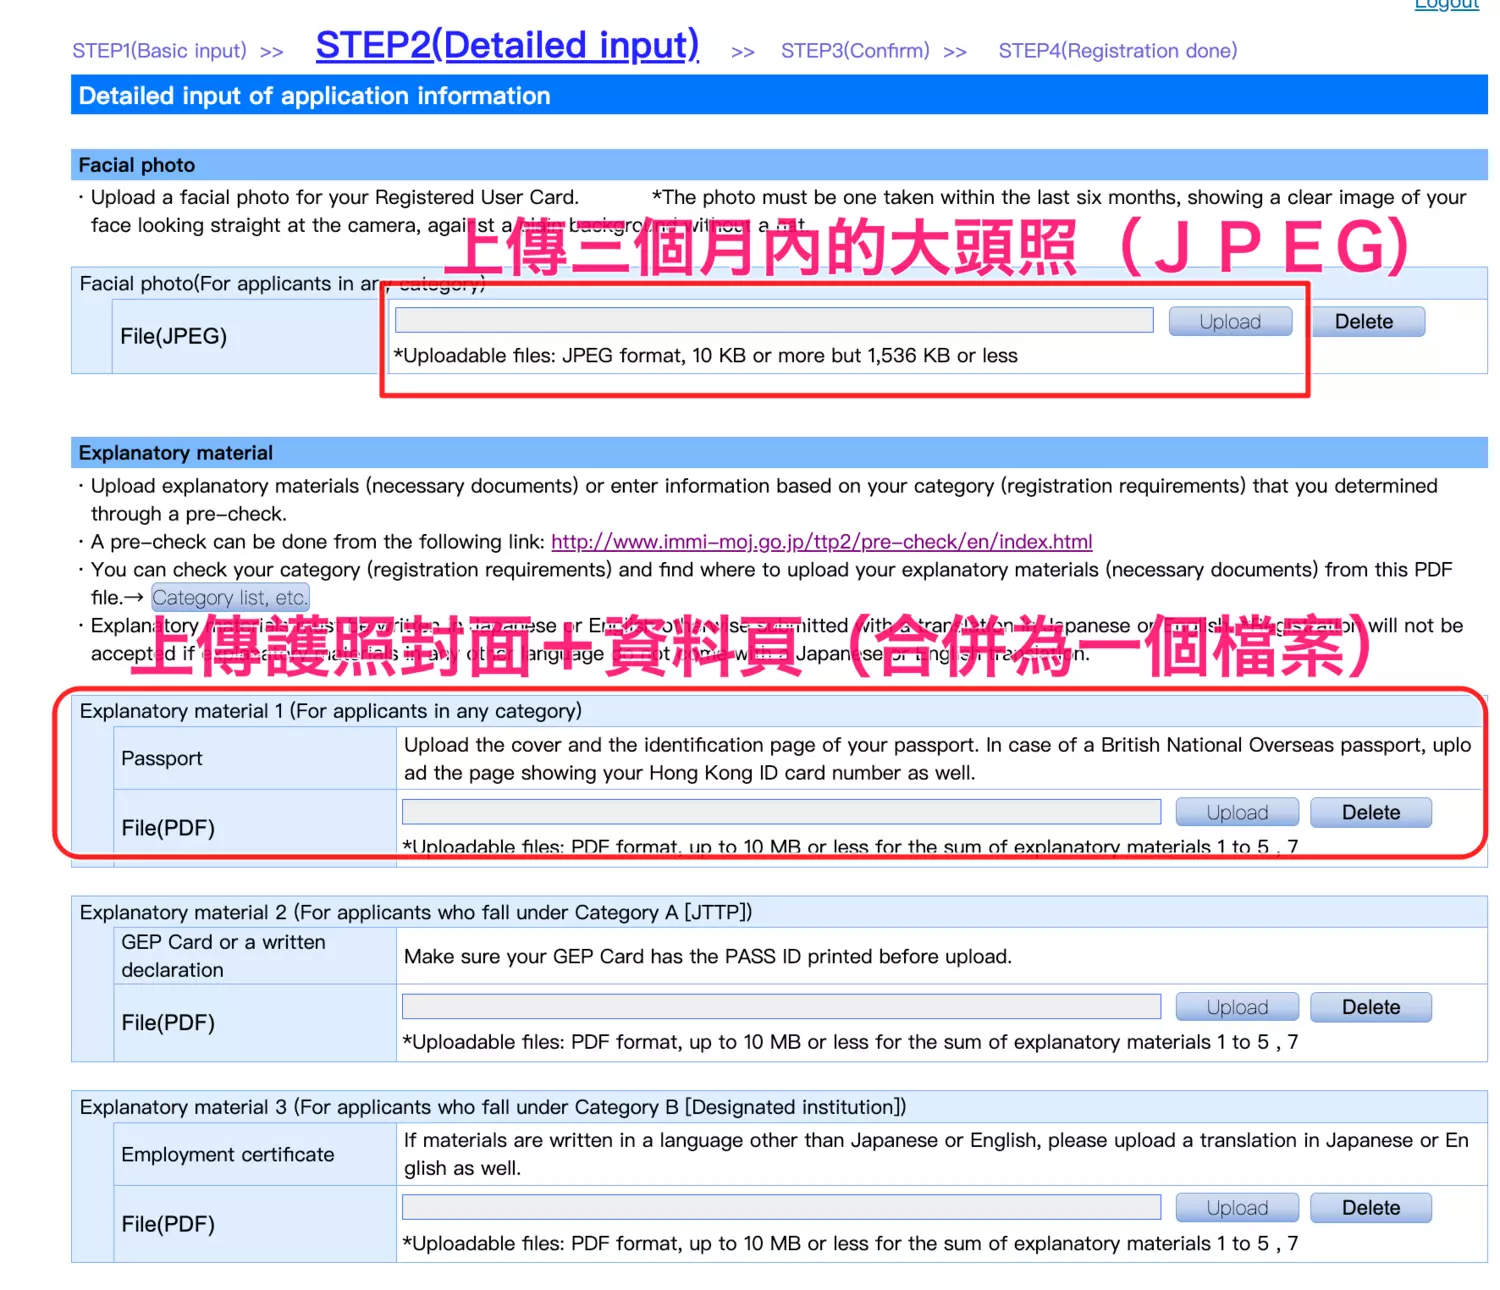 持有TTP卡可享日本自動通關(電子入境卡)，日本受信賴旅客計劃 (Japan Trusted Traveler Program)申請資格、申請資料填寫、通過時程與步驟、二次面試及領卡